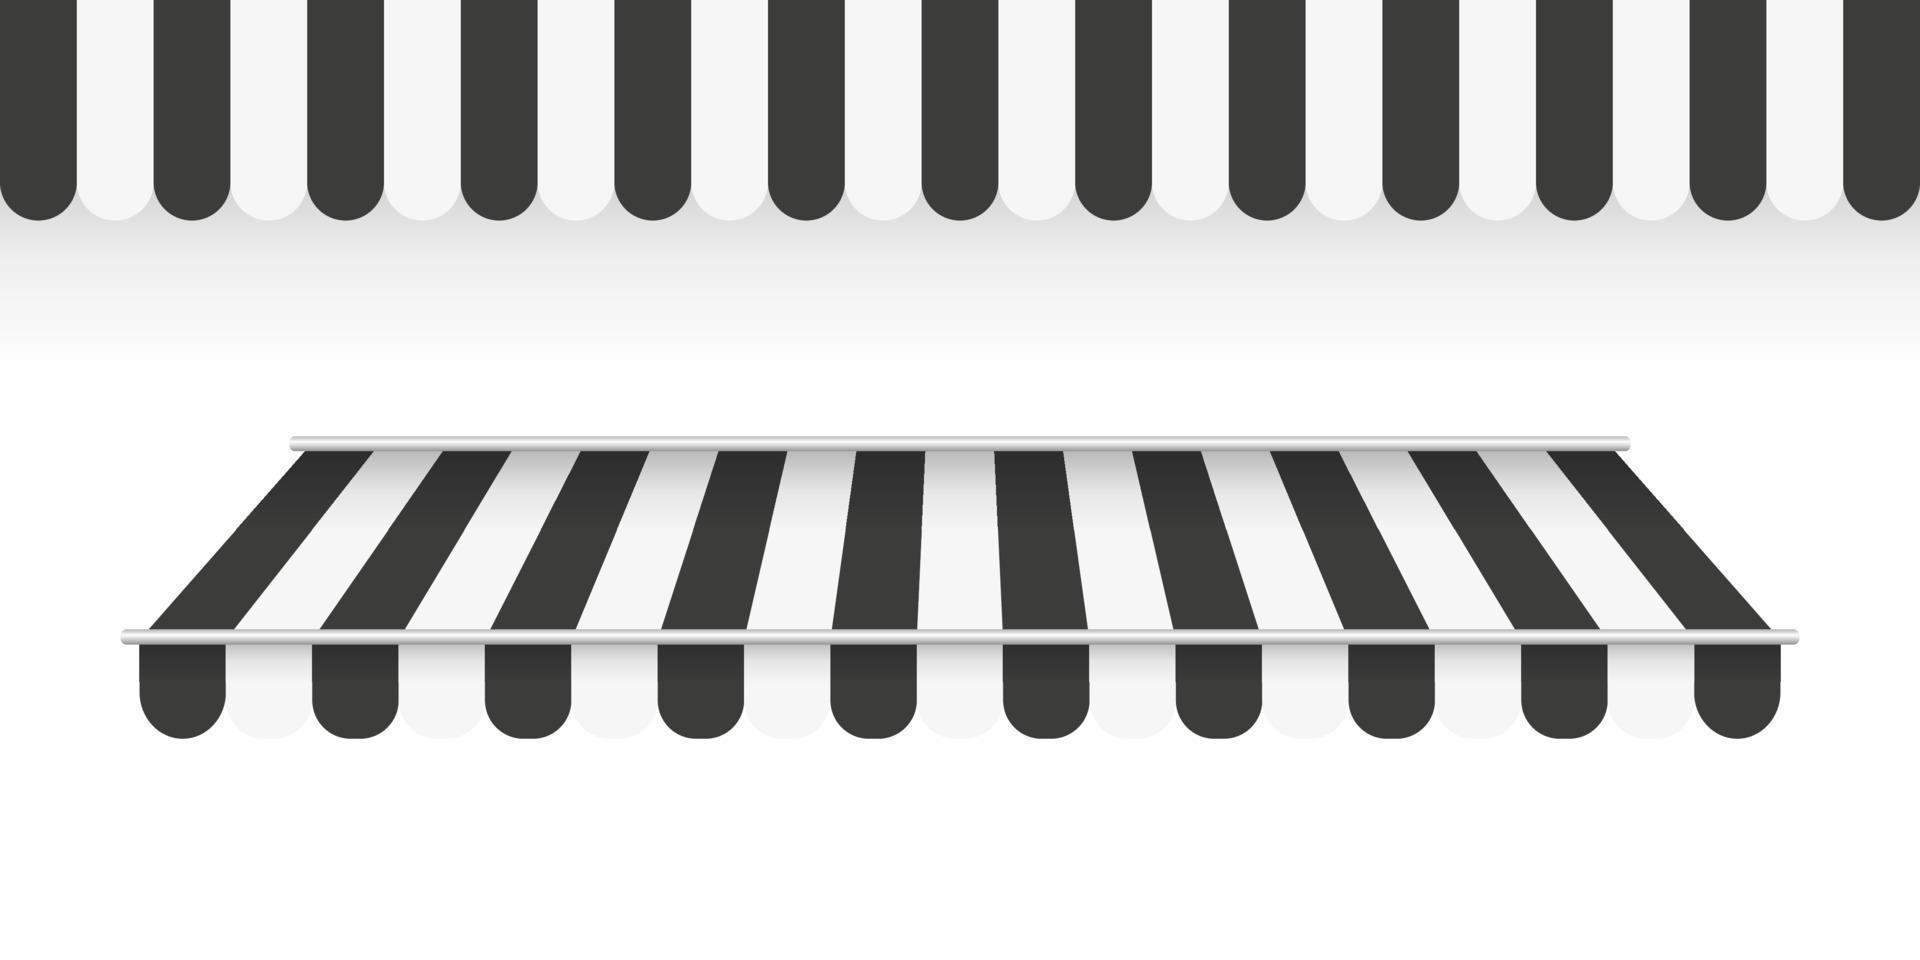 toldos negros. toldo de rayas. toldo de carpa para el mercado sobre fondo blanco. ilustración vectorial vector